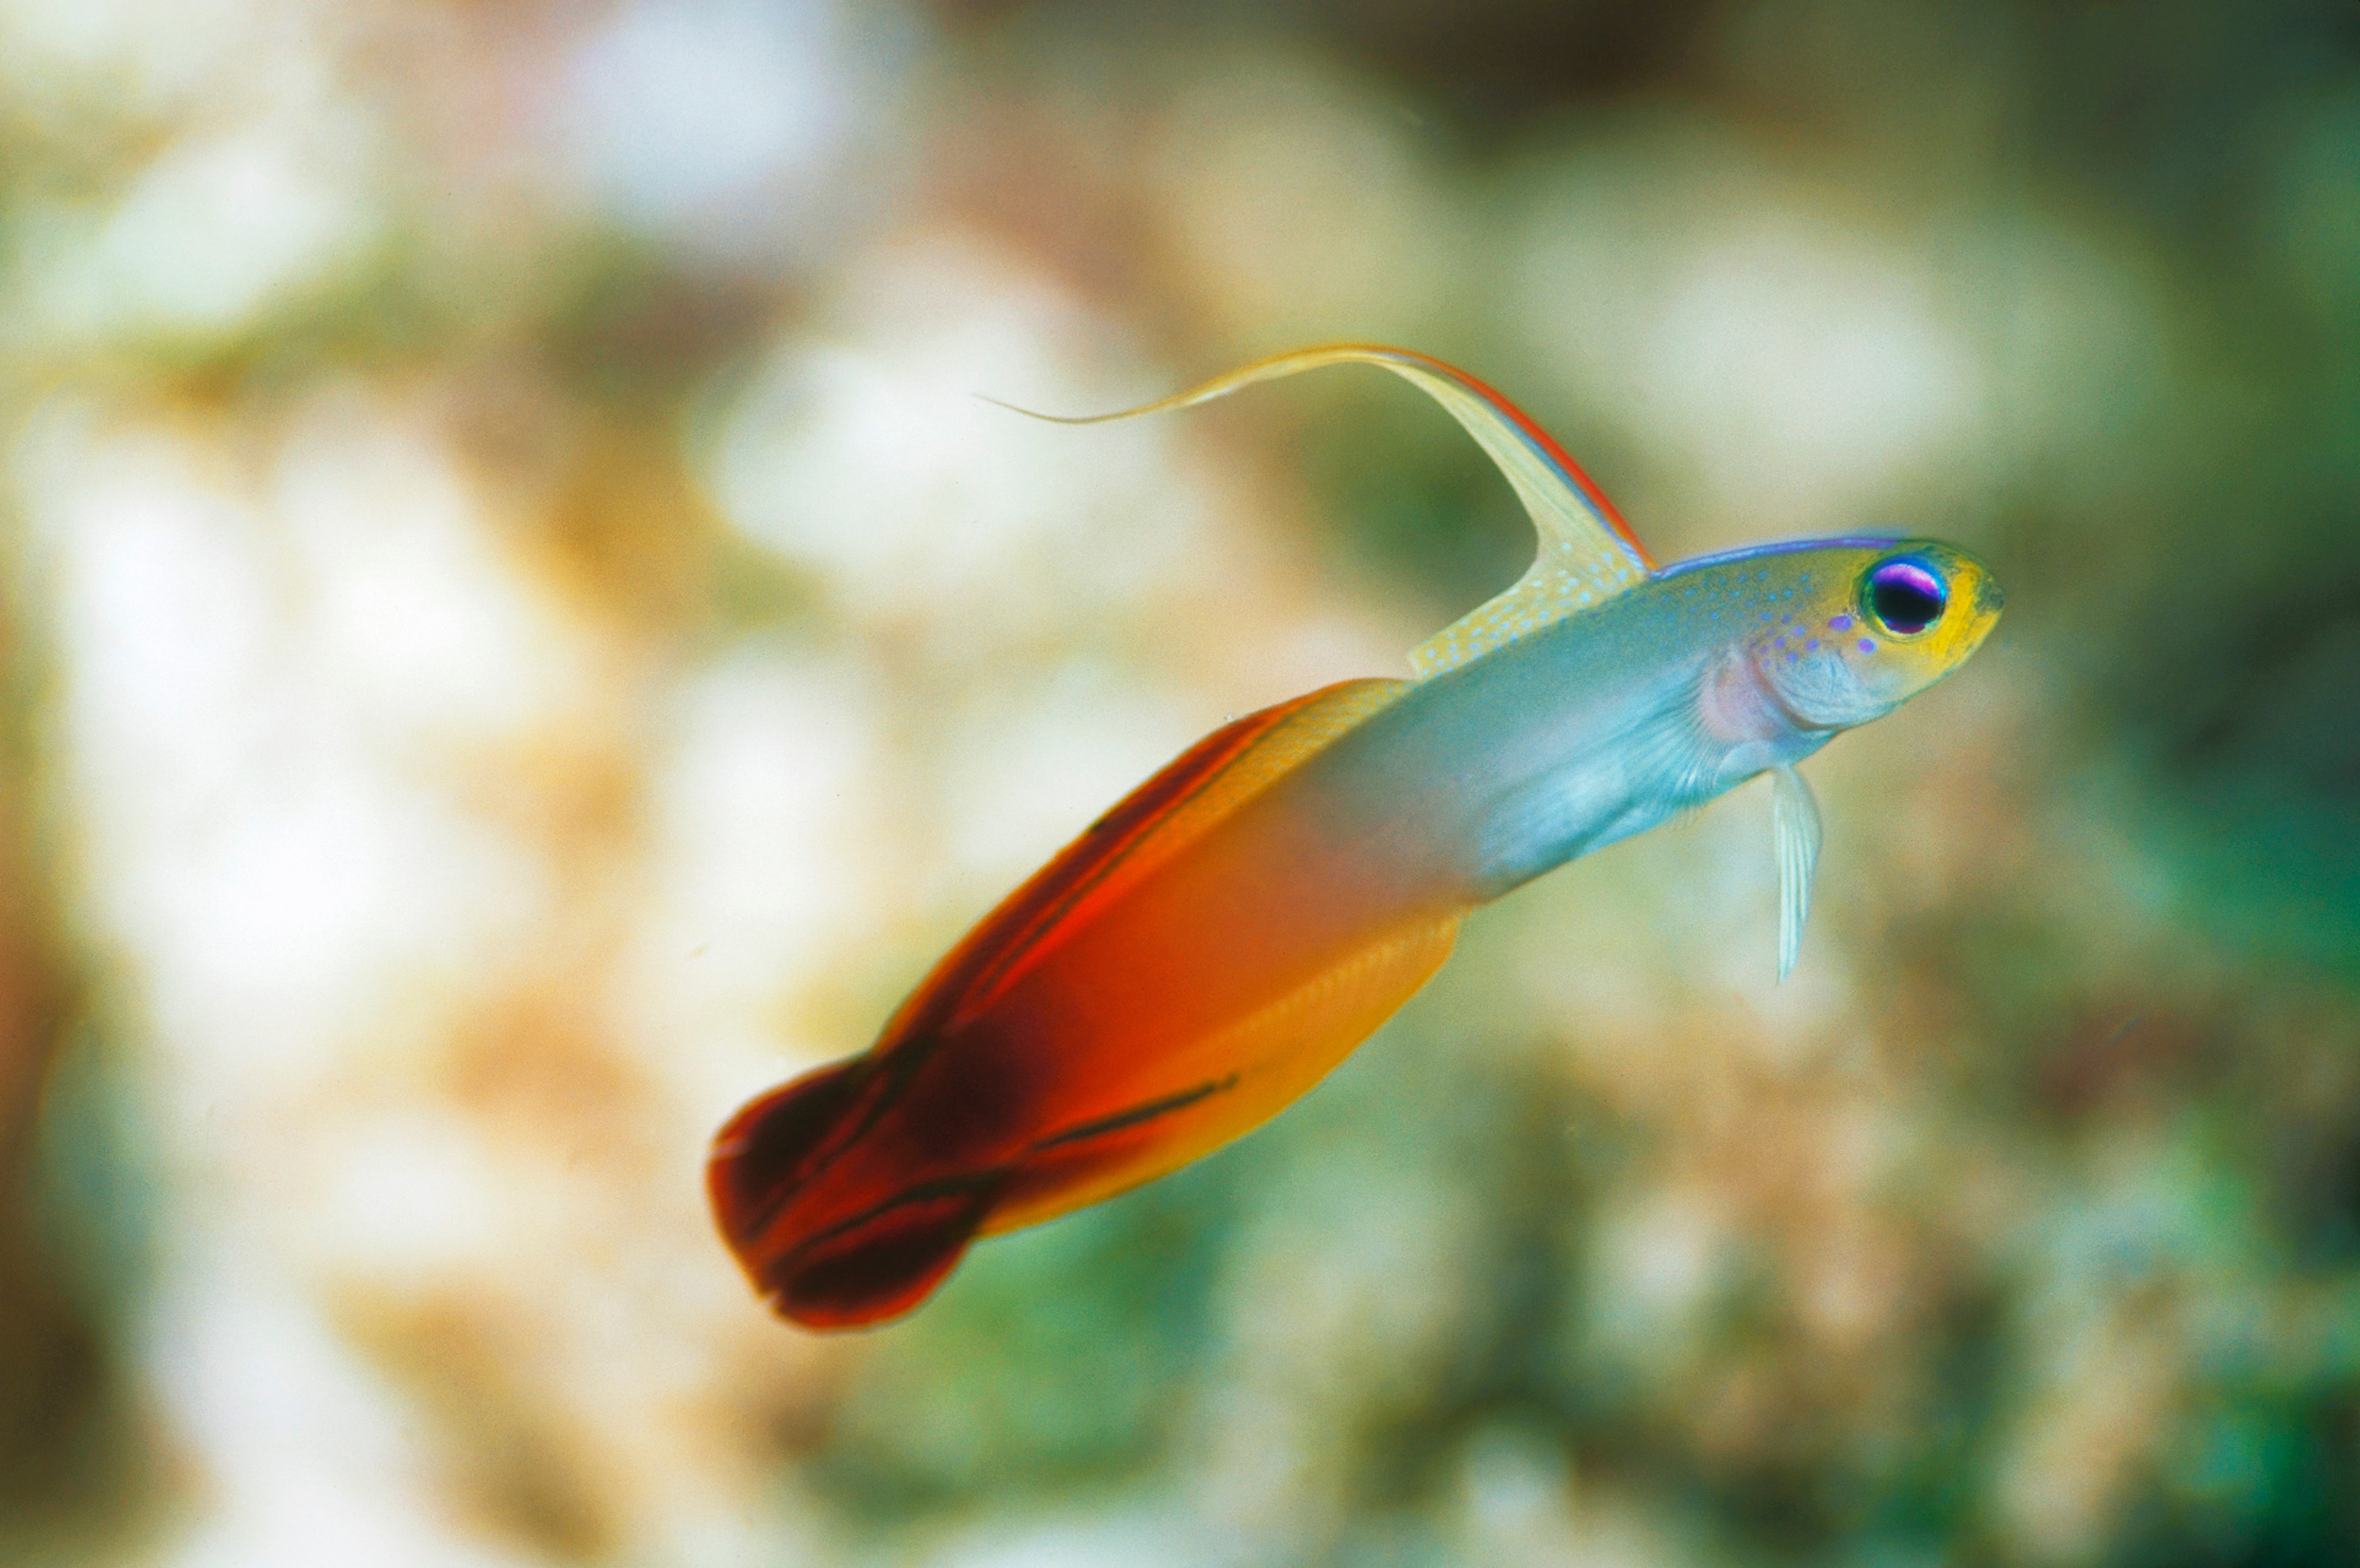 Five Aquarium Fish Best Left in the Ocean | Hakai Magazine